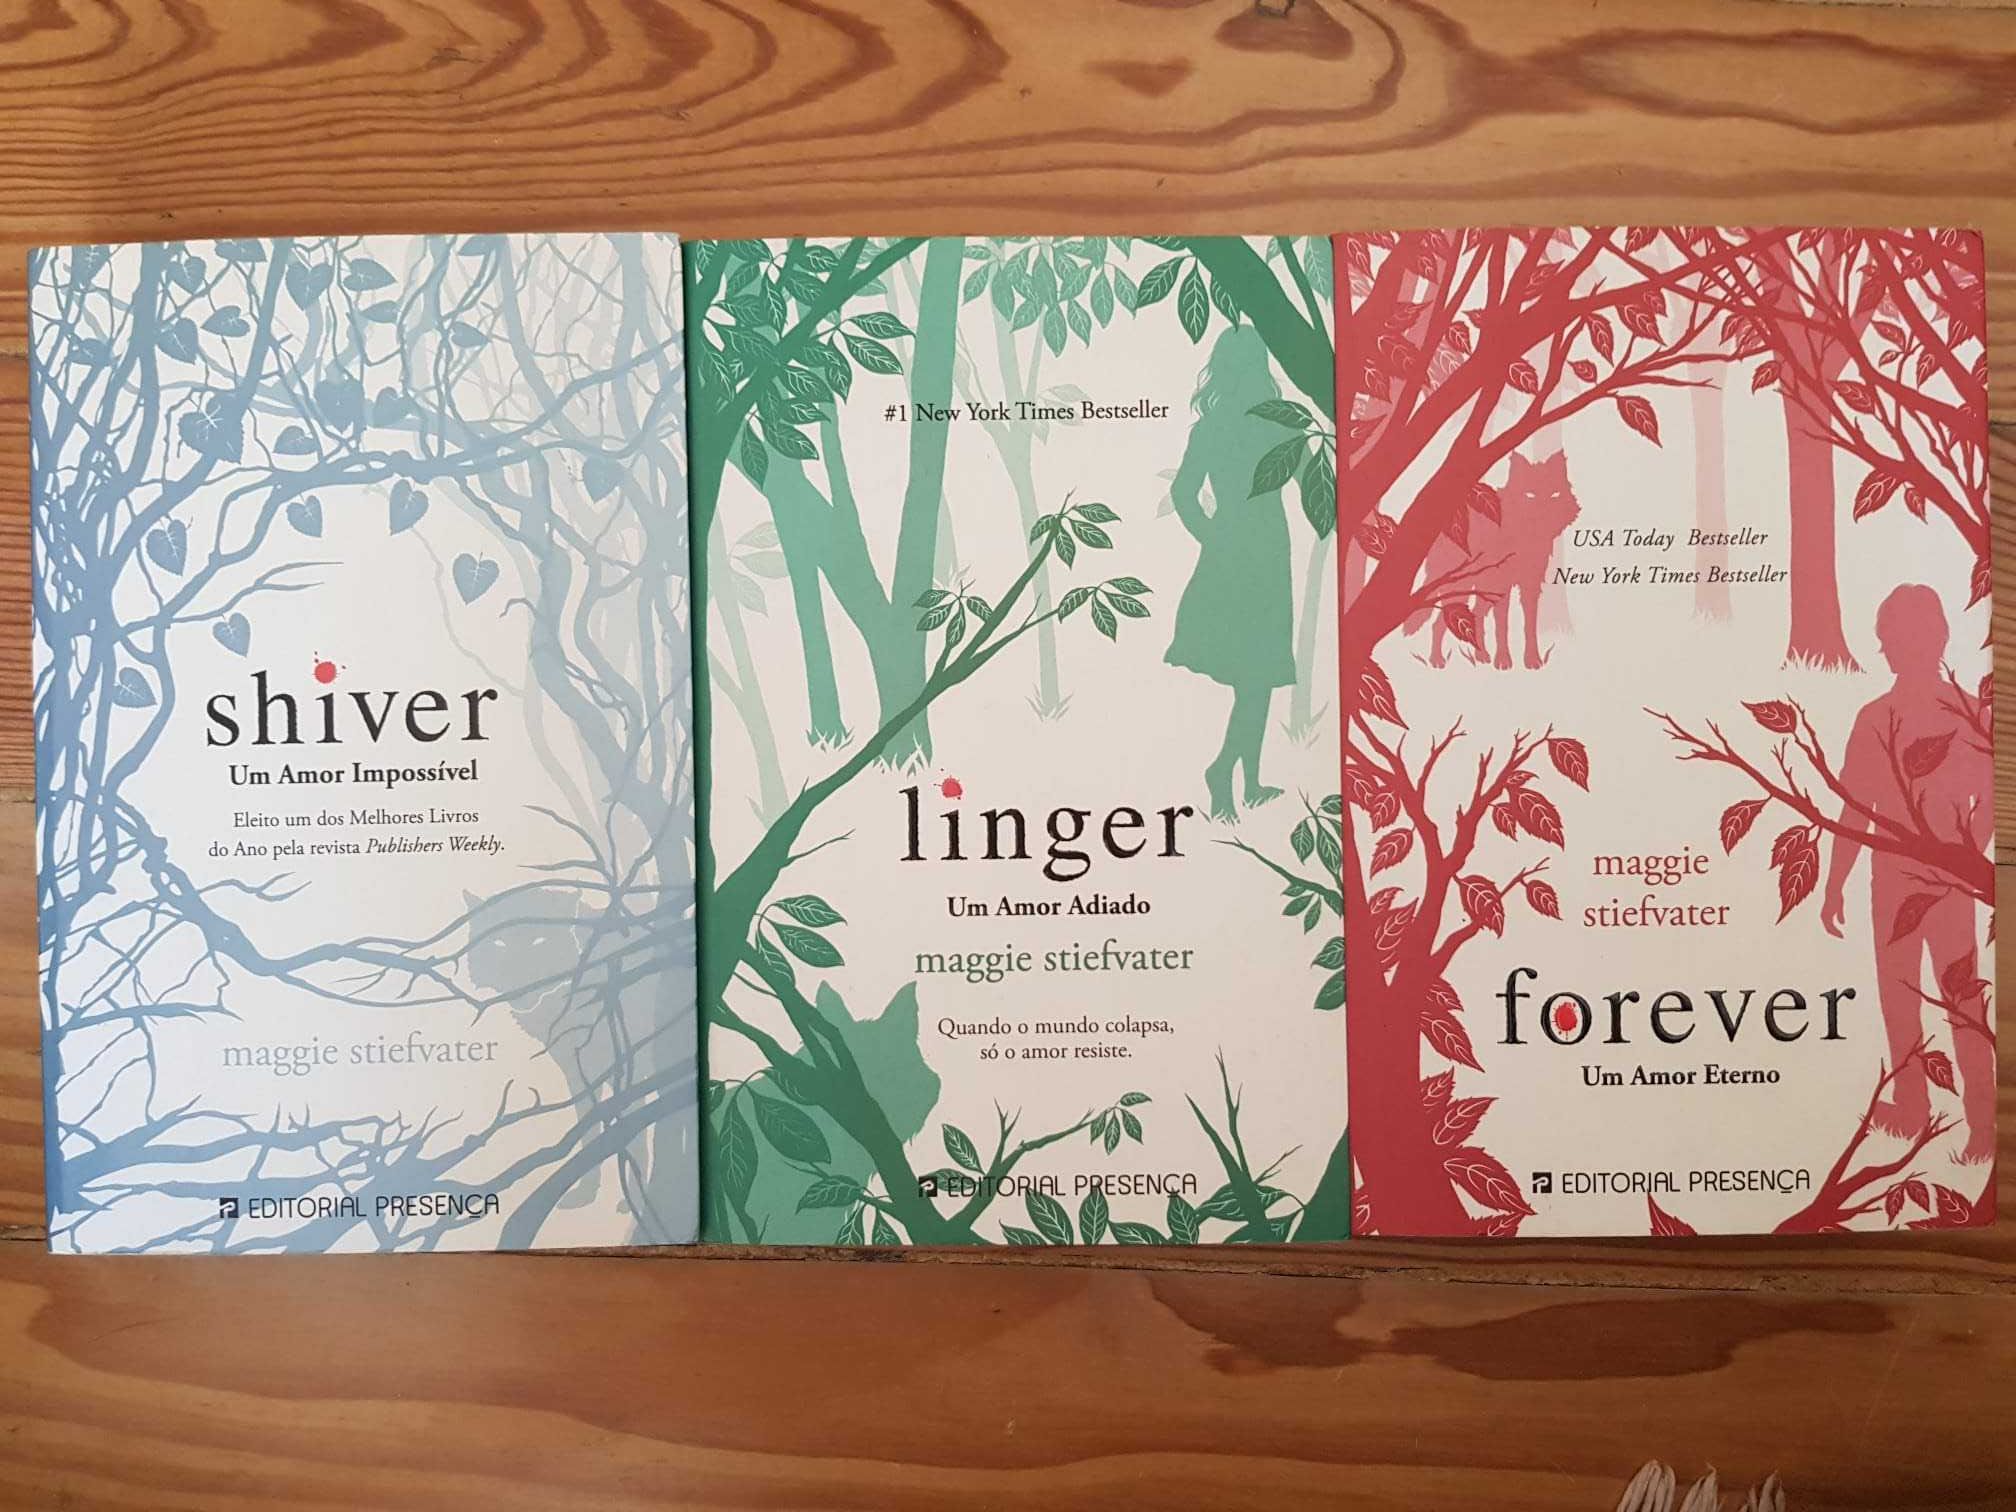 Trilogia "Shiver", Maggie Stiefvater